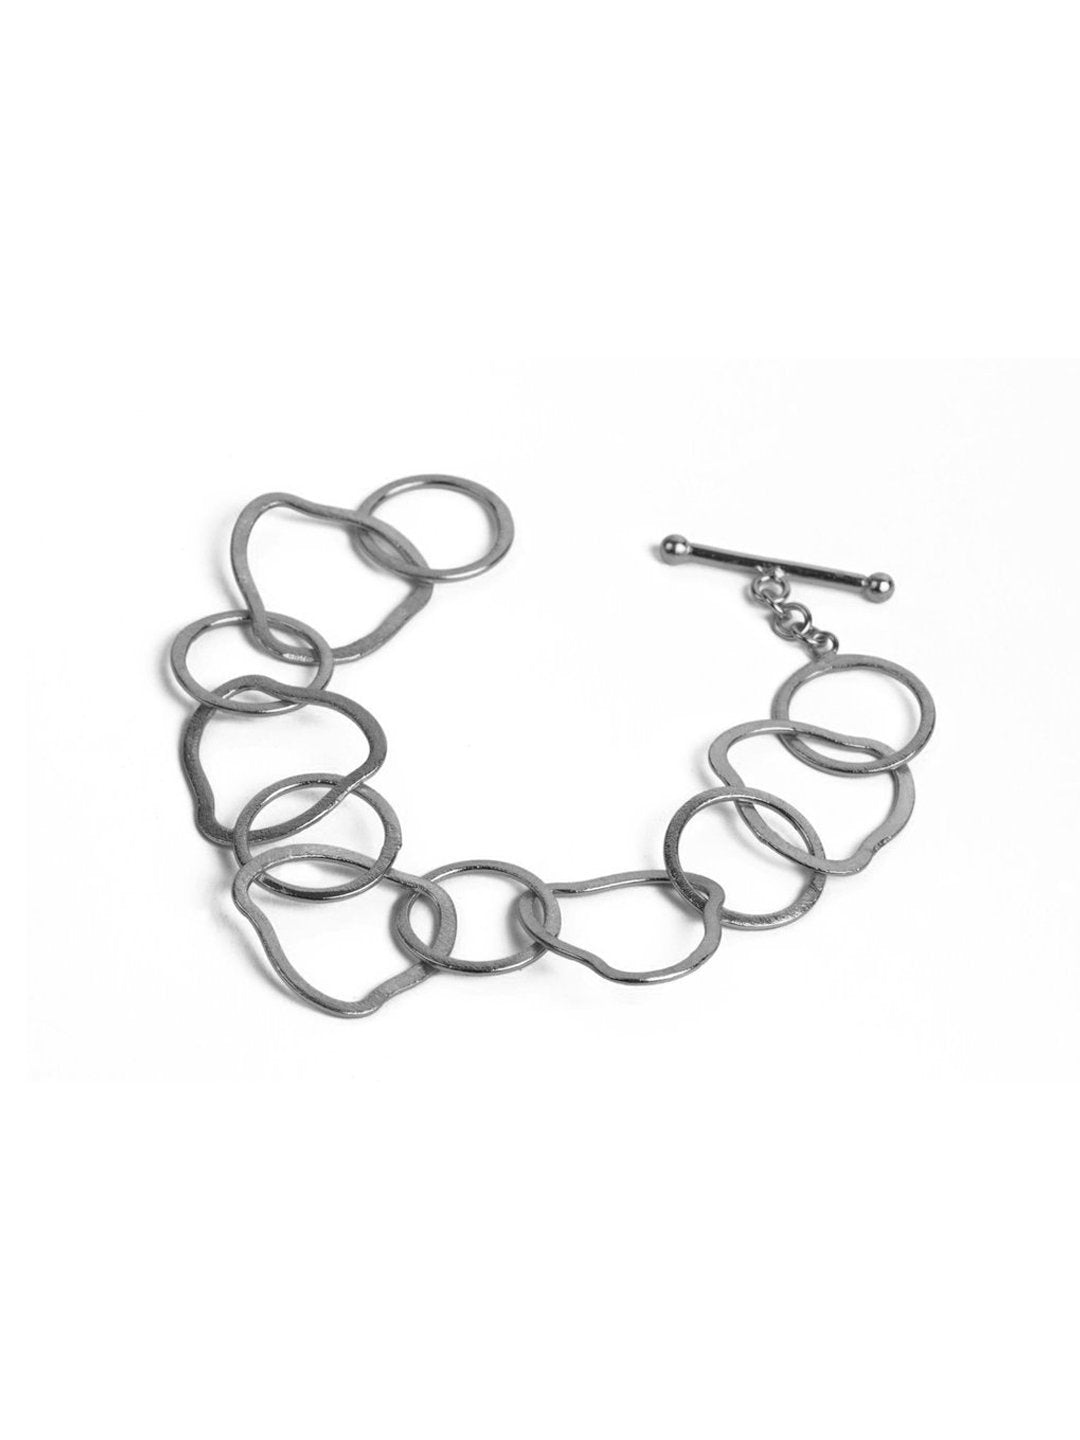 Unique Link Chain Bracelet - Stilskii